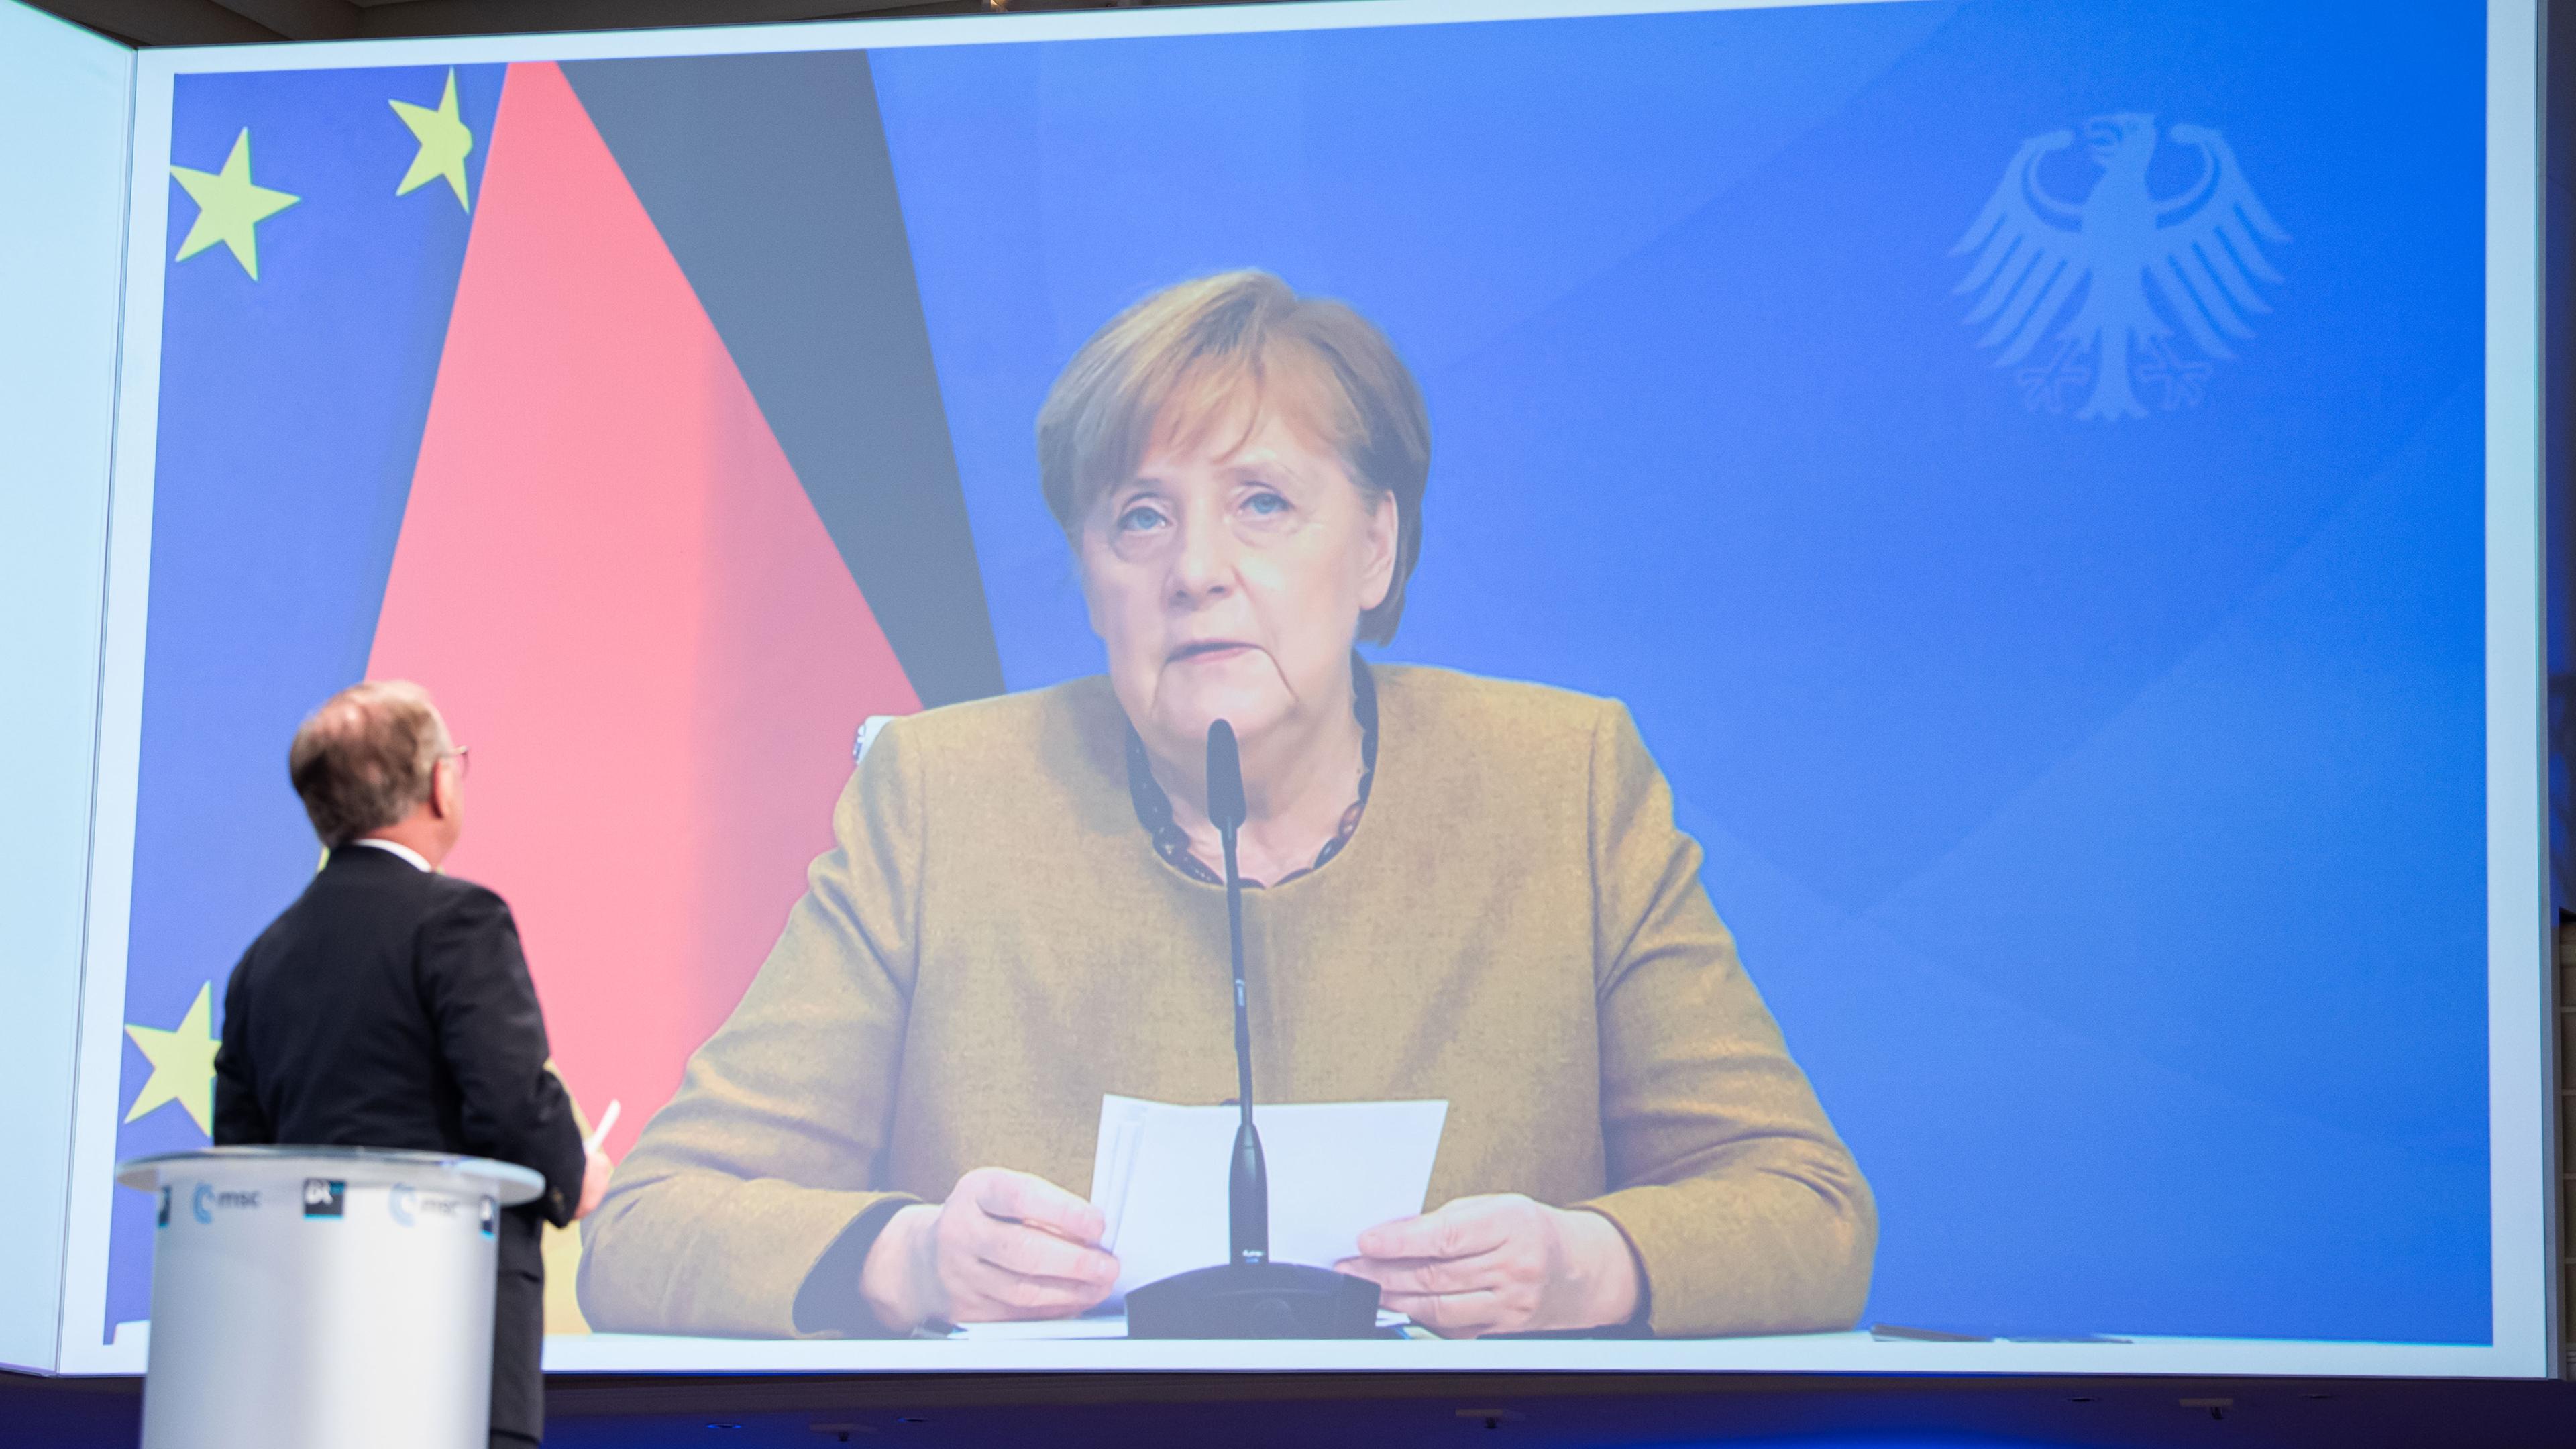 Zu sehen ist Angela Merkel auf einer großen Leinwand, wie sie sitzend eine Rede hält. Hinter ihr sieht man die deutsche Flagge.